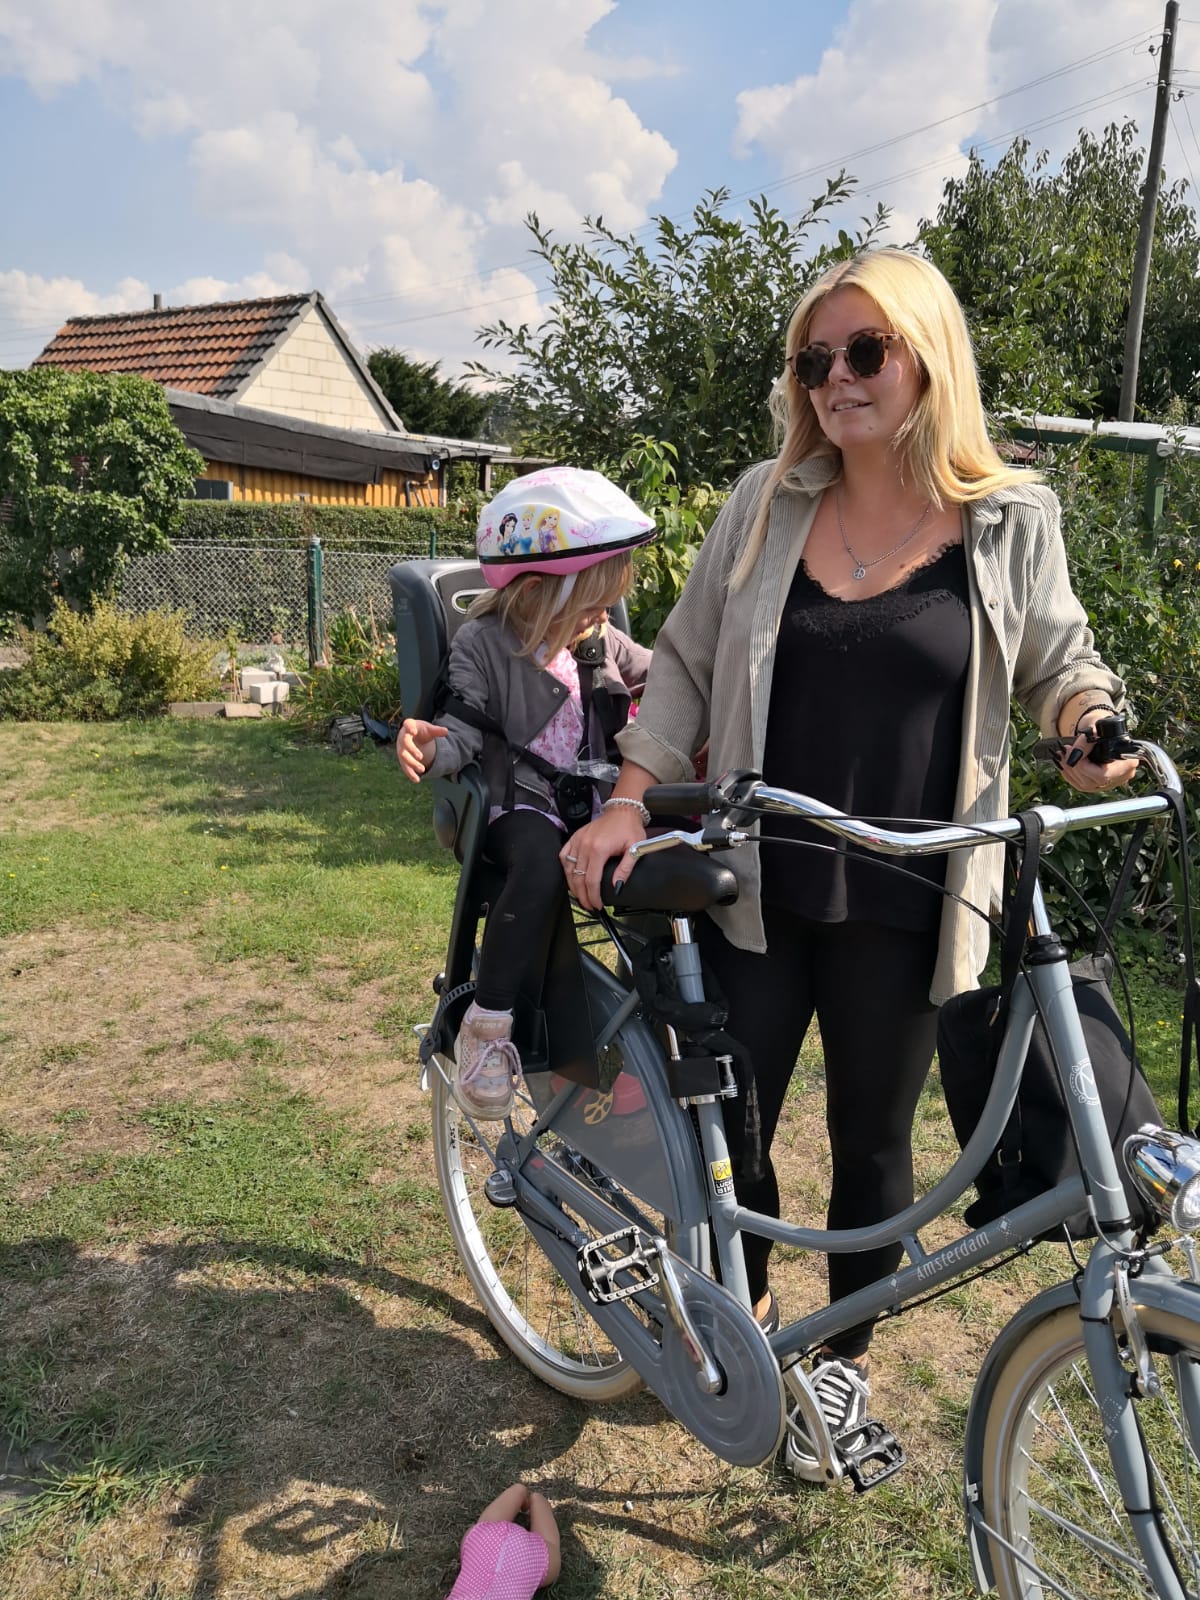 Frau (Mutter?) mit dem Fahrrad mit Kind sitzen halten